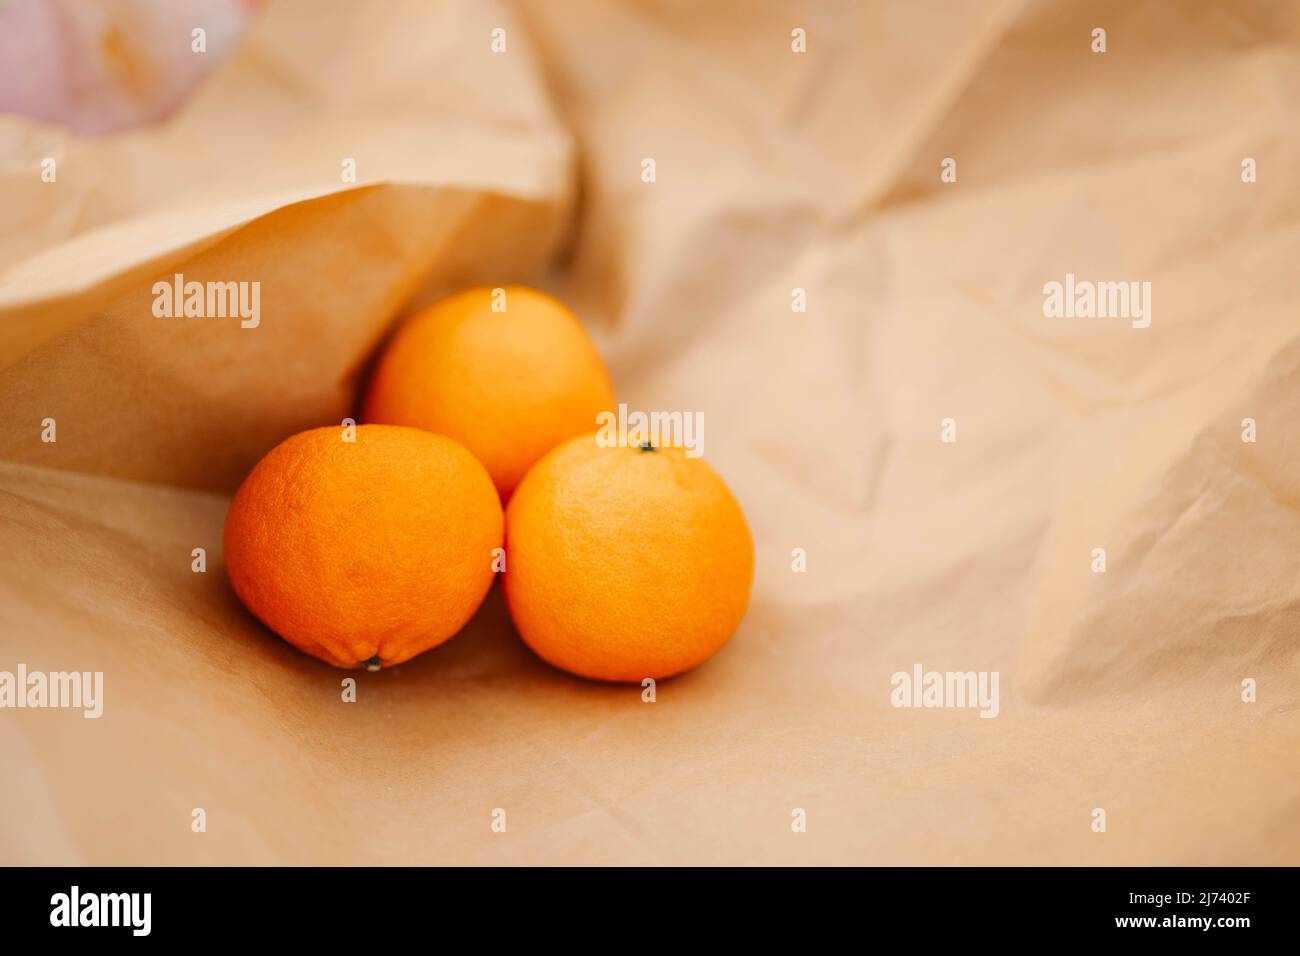 Le arance di agrumi giacciono sulla carta artigianale. Tangerini fragranti. Foto di alta qualità Foto Stock